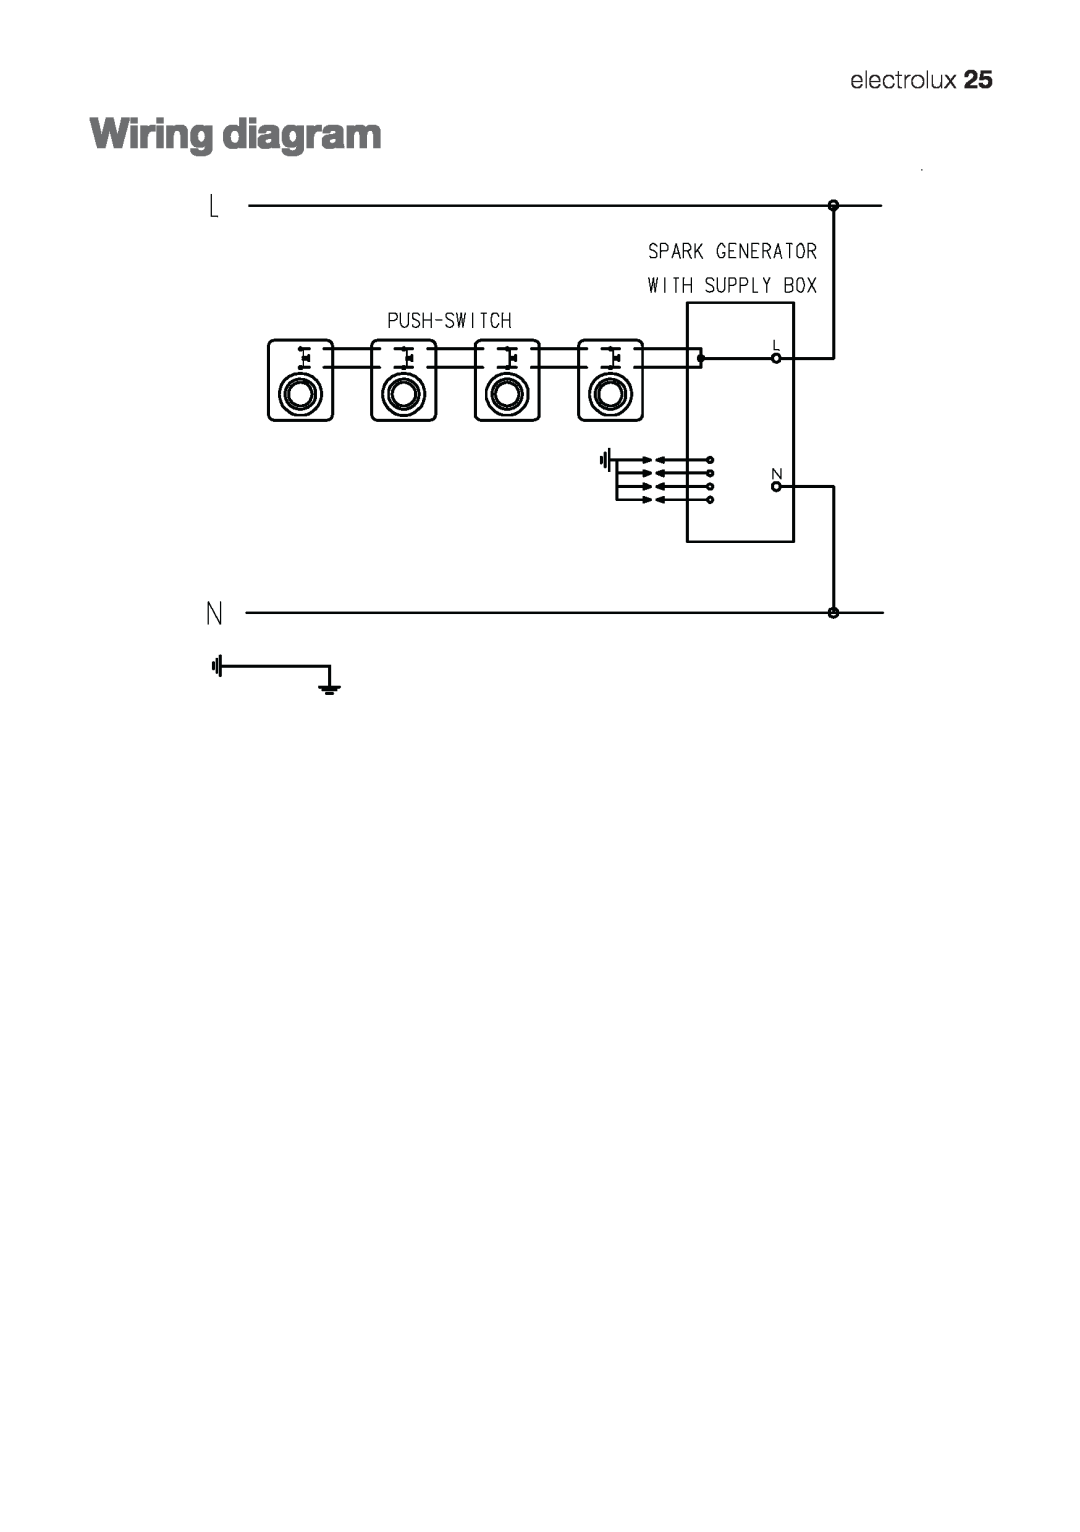 Electrolux EHG 6412, EHG 6402, EHG 6832 manual Wiring diagram, electrolux 